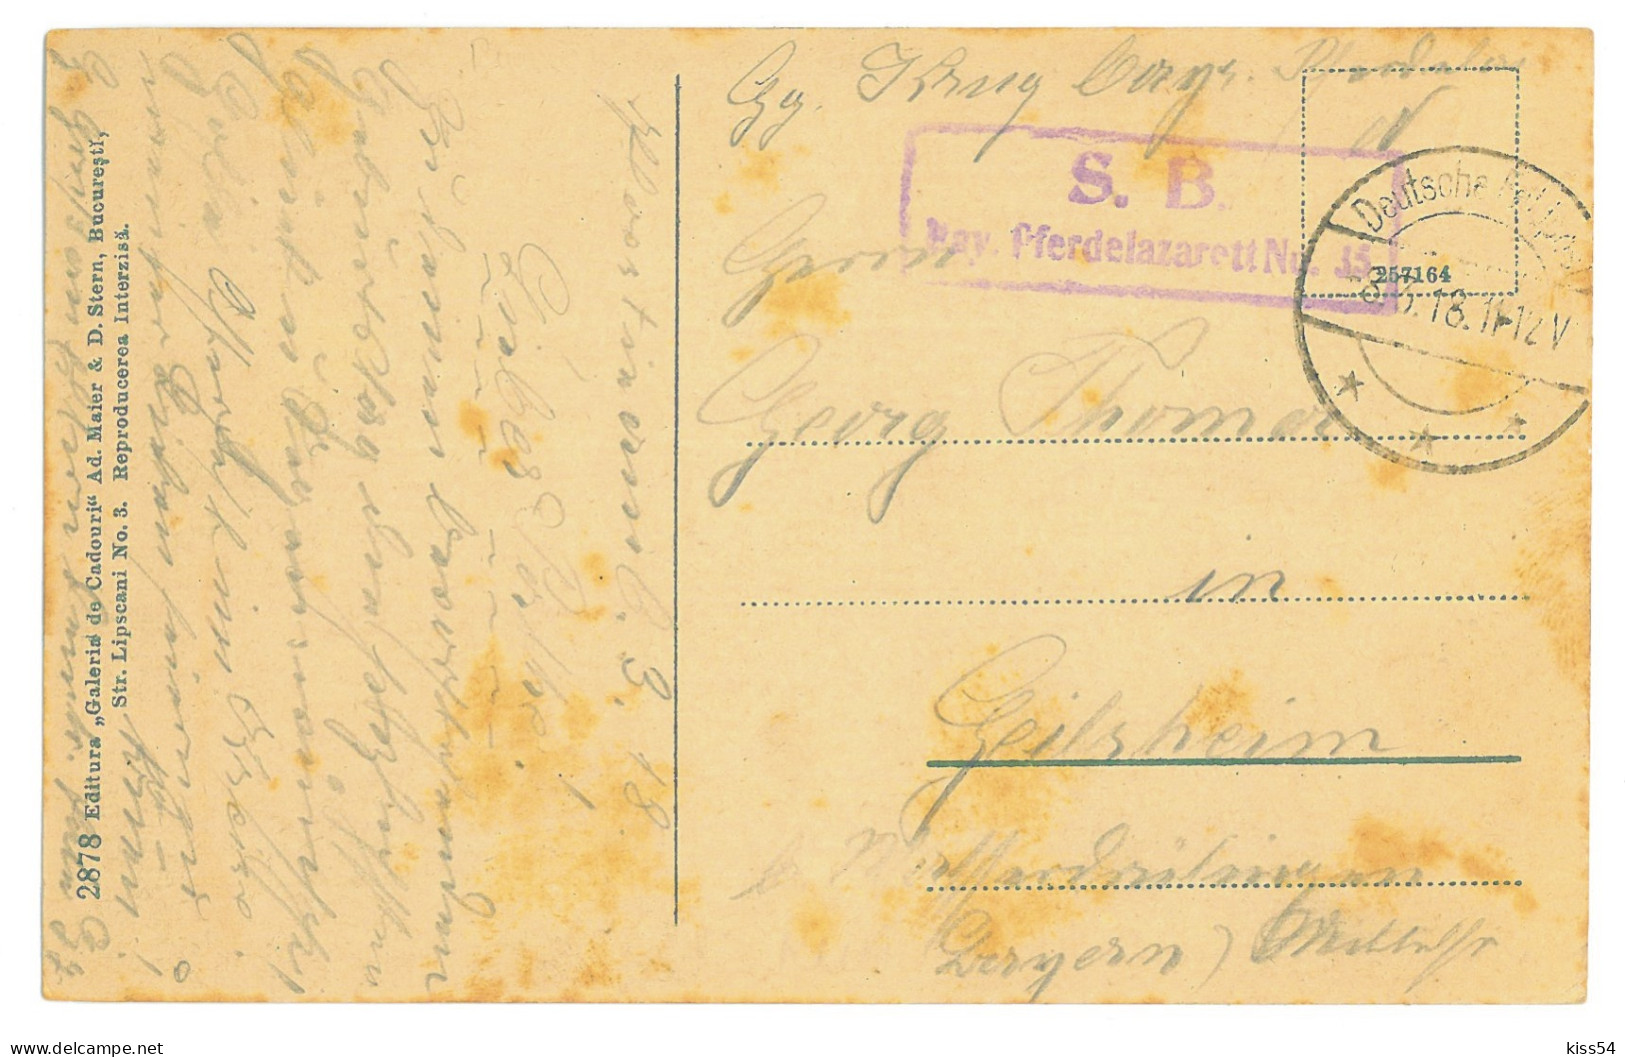 RO 77 - 16502 PLOIESTI, Market, Romania - Old Postcard, CENSOR - Used - 1918 - Rumänien